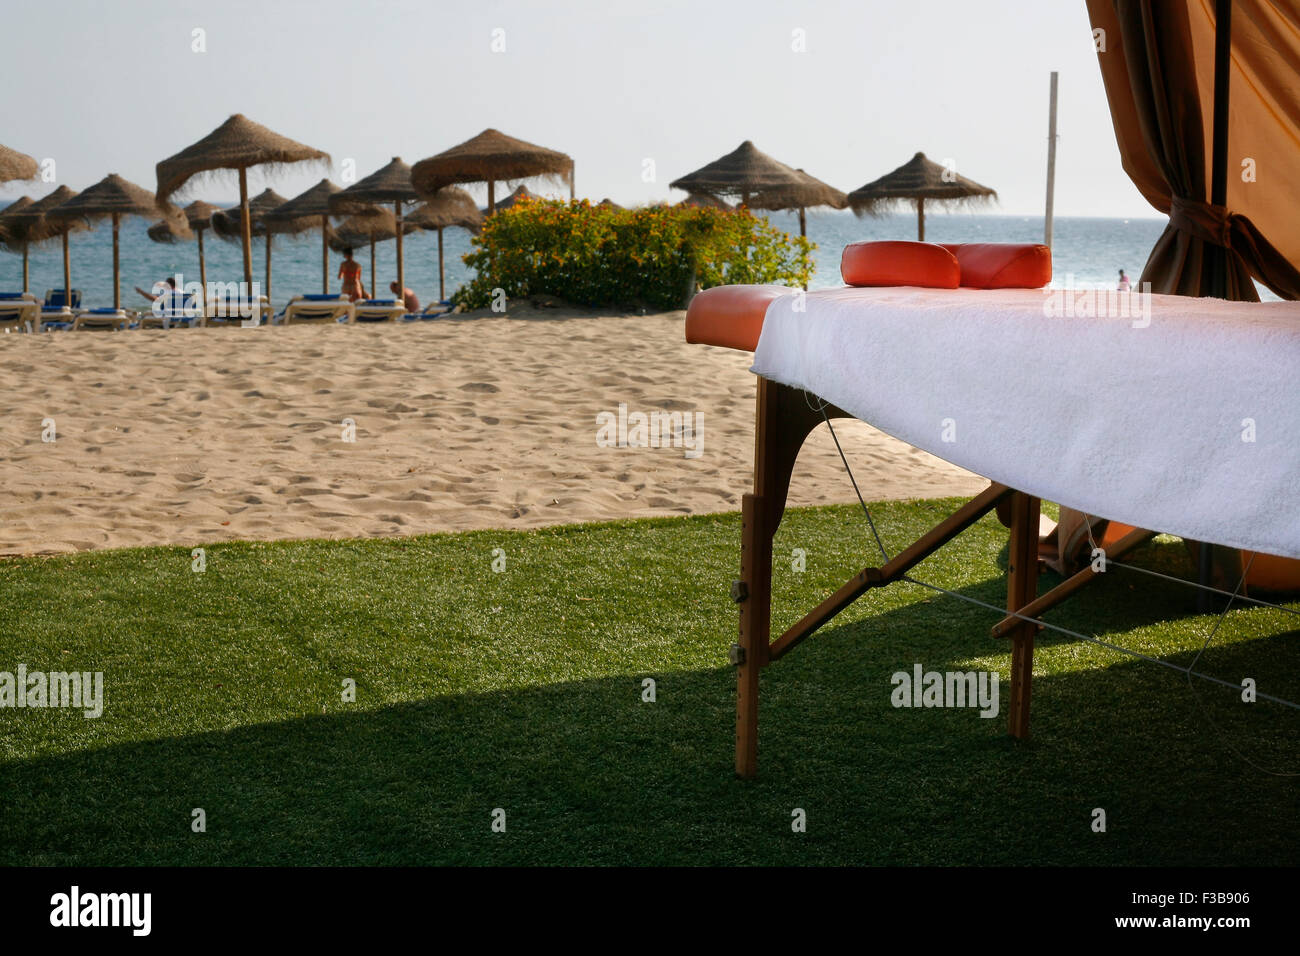 Massage area on the beach on summer vacation season Stock Photo